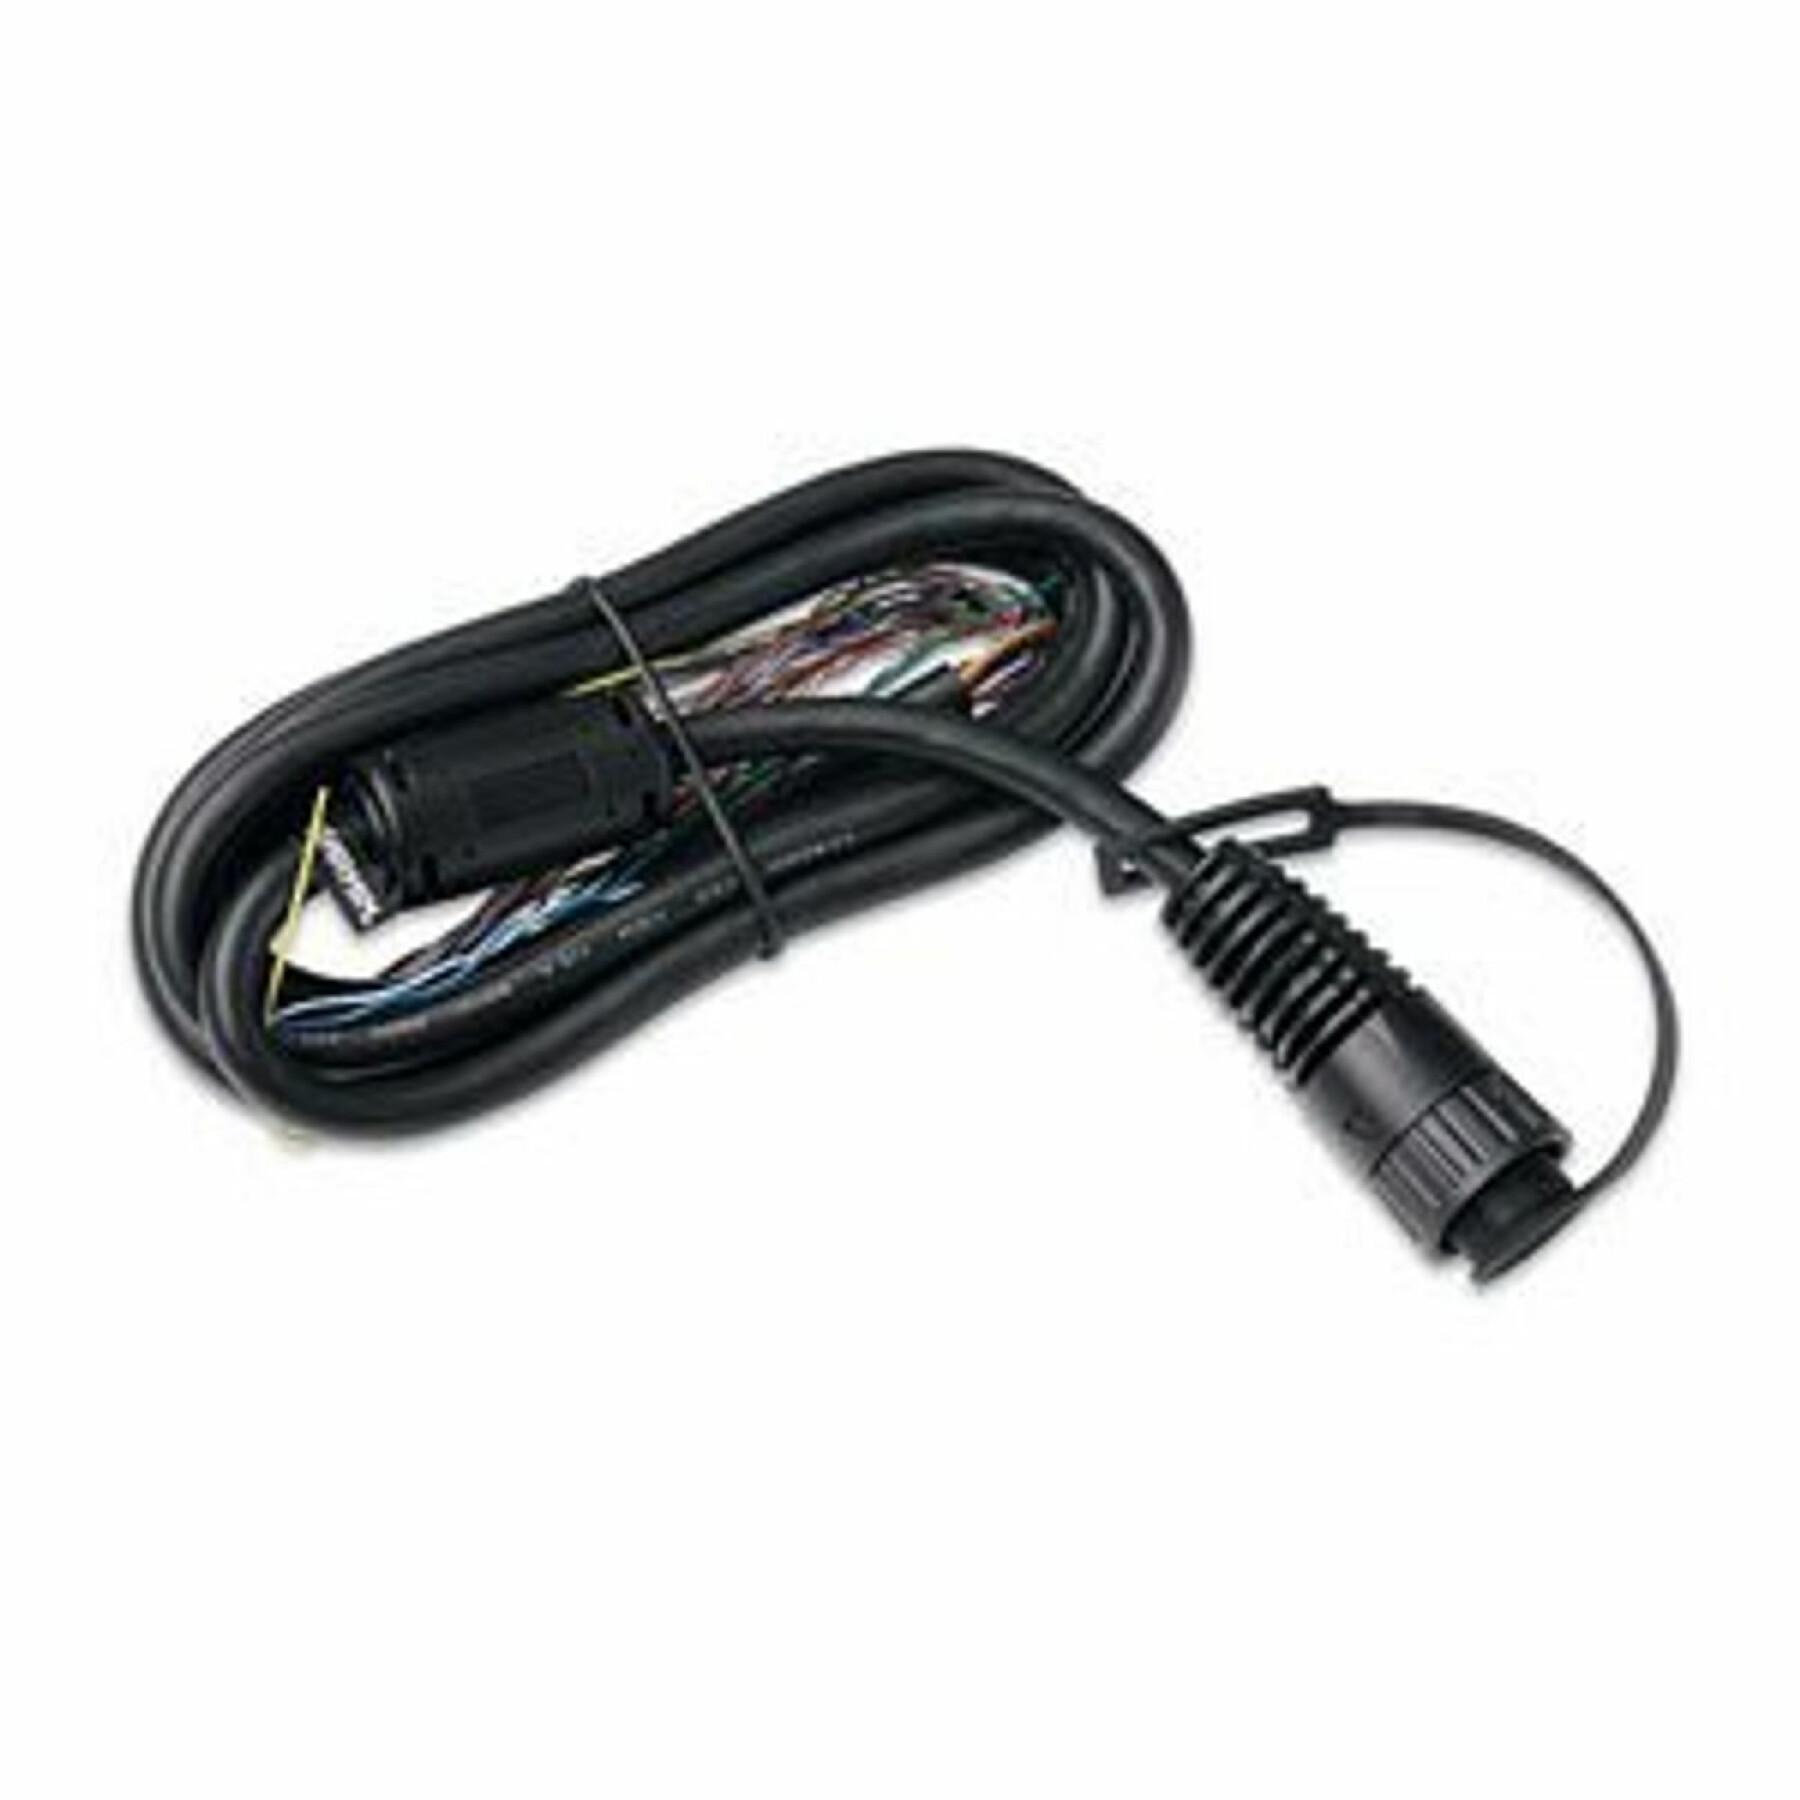 Kabel Garmin nmea 0183 cable